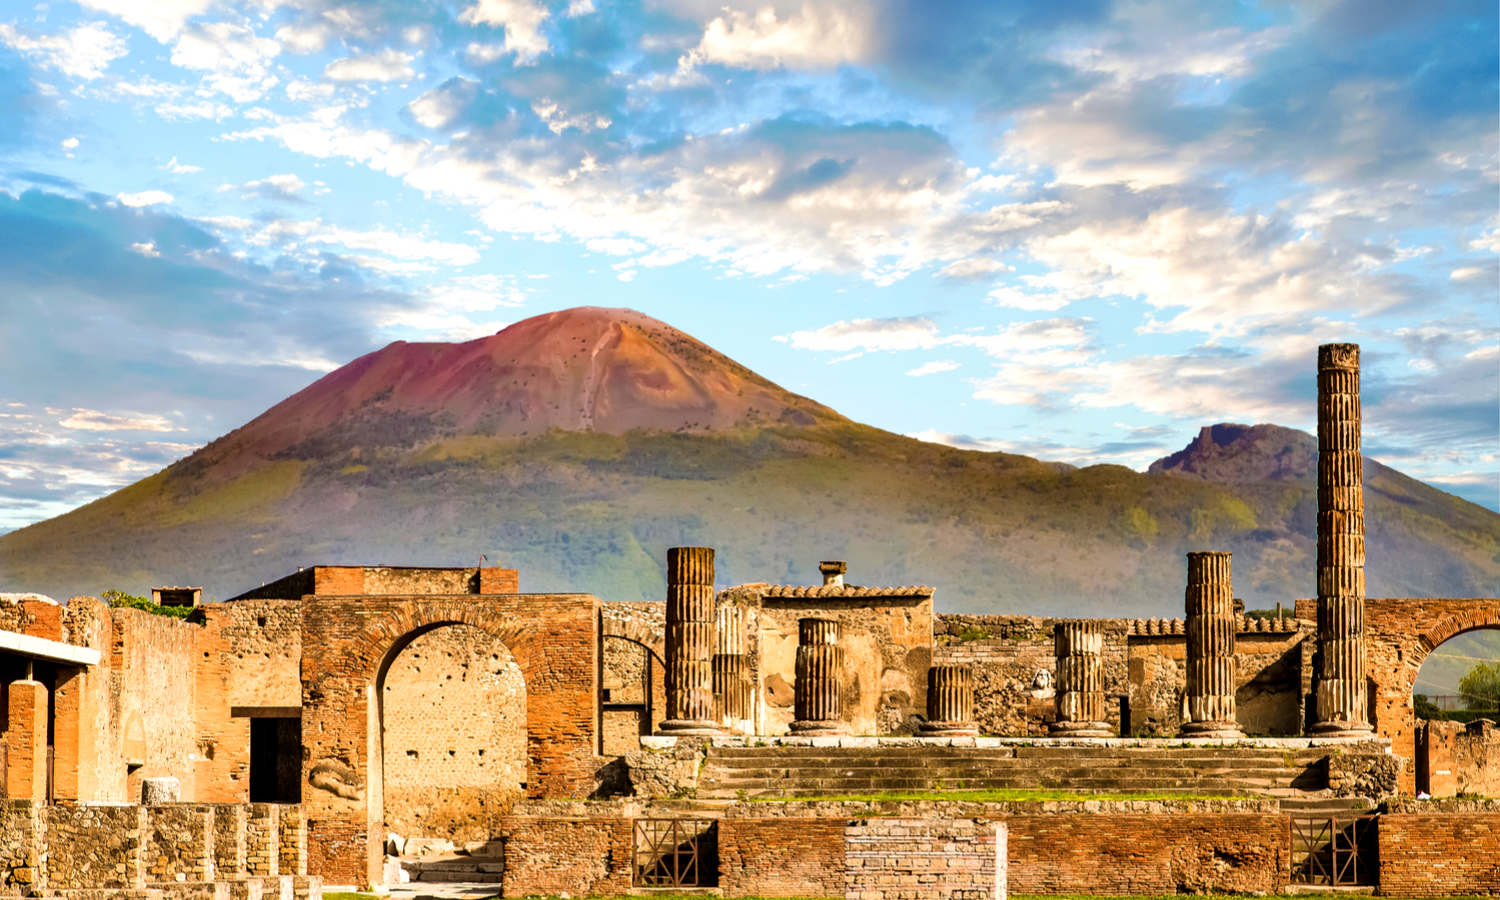 Picture of Pompeii ruins with Mount Vesuvius. 